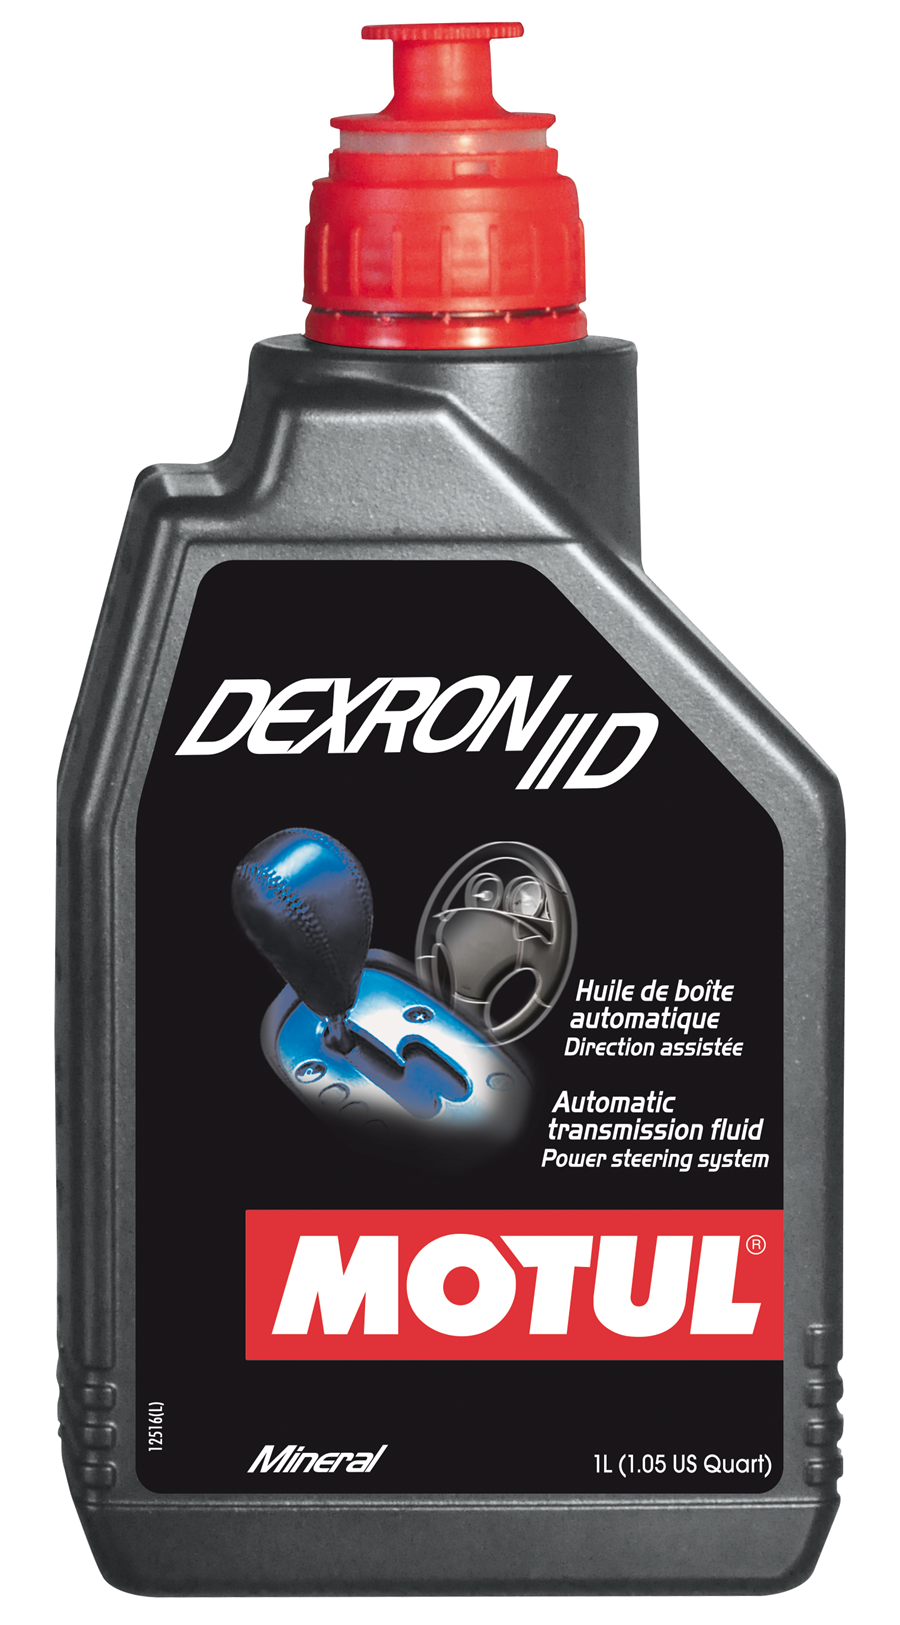 Motul Dexron IID Трансмиссионная жидкость для АКПП